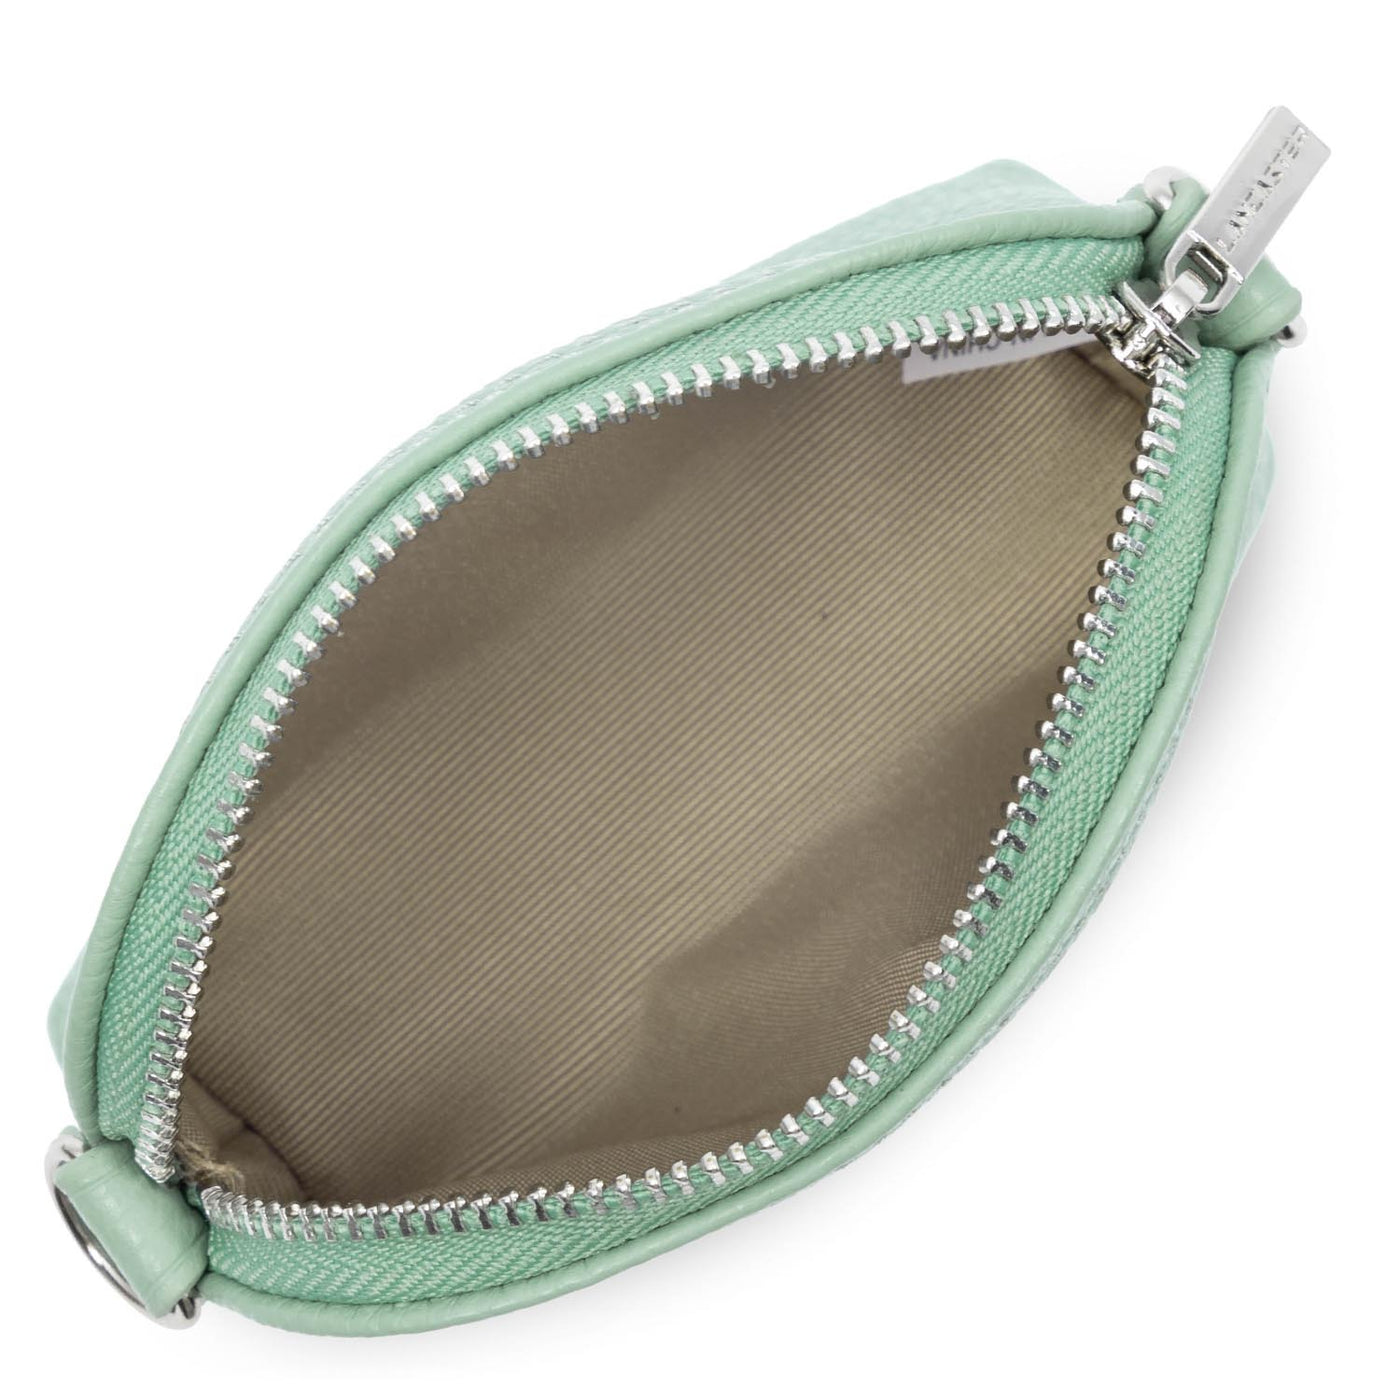 small coin purse - foulonné pm #couleur_vert-gris